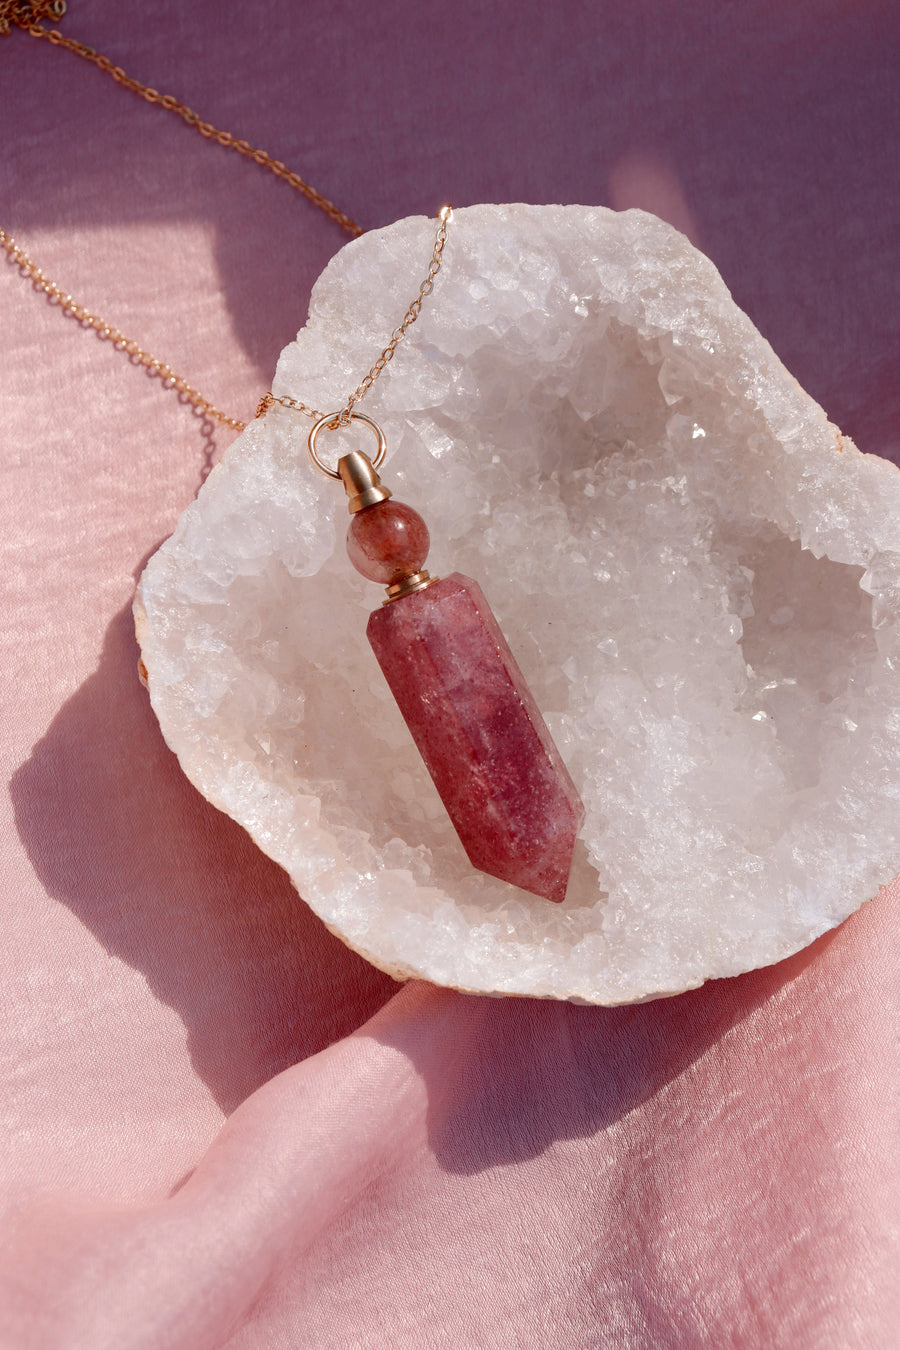 Potion bottle necklace | Strawberry quartz